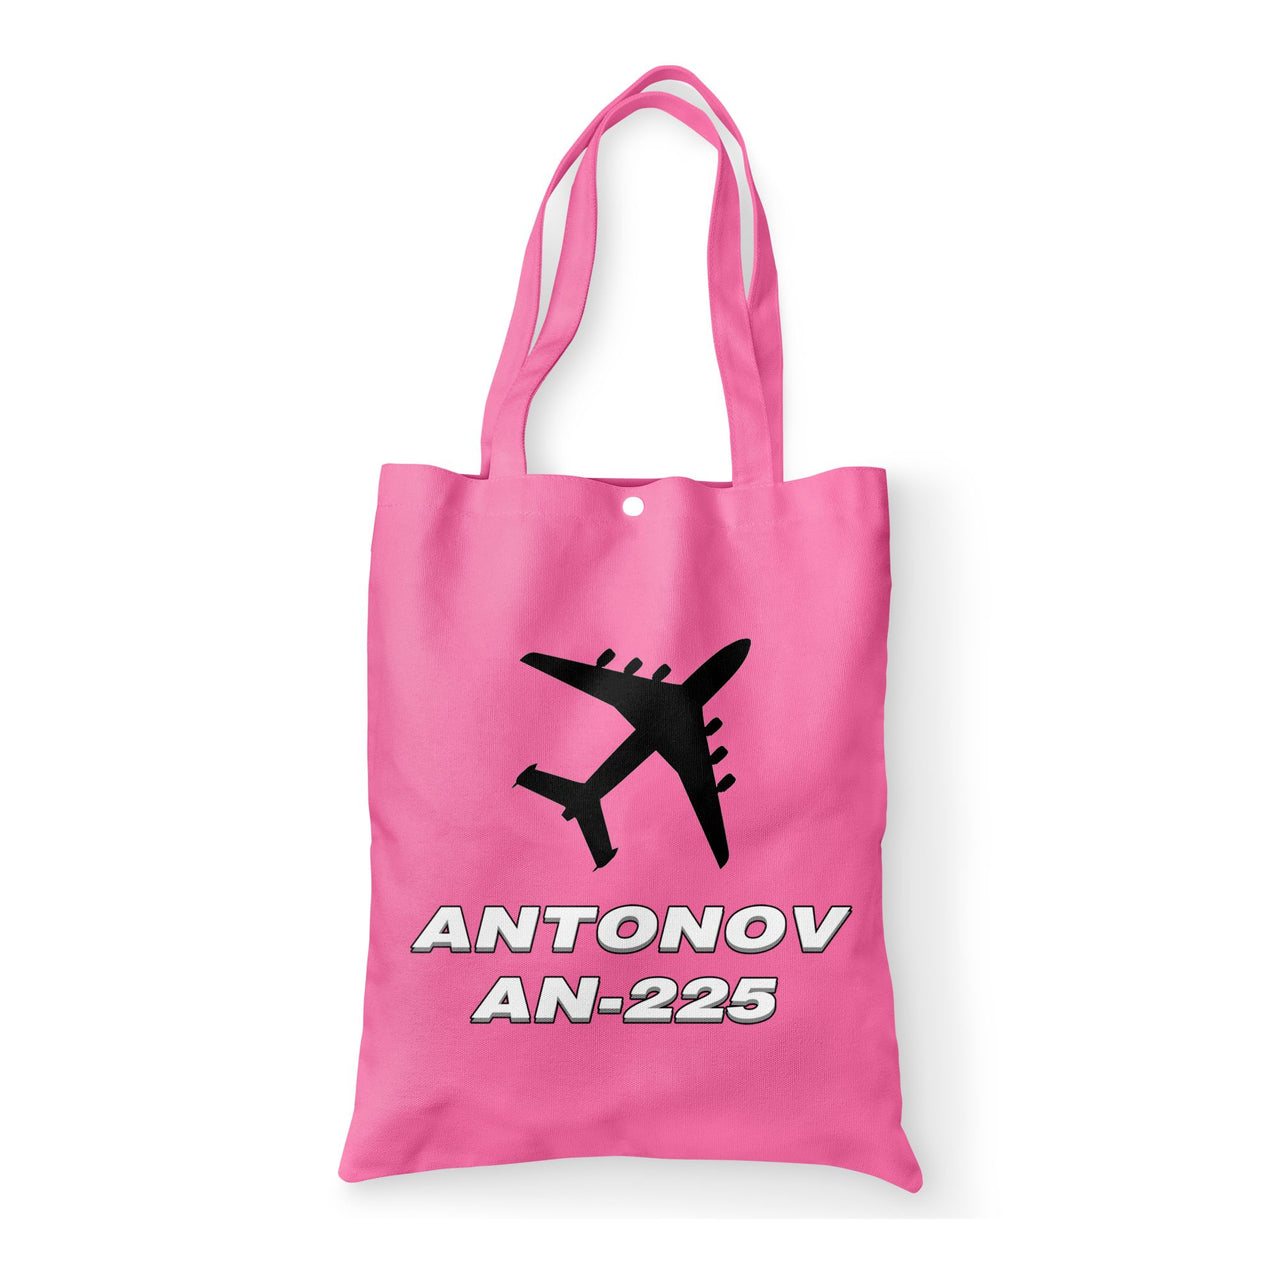 Antonov AN-225 (28) Designed Tote Bags